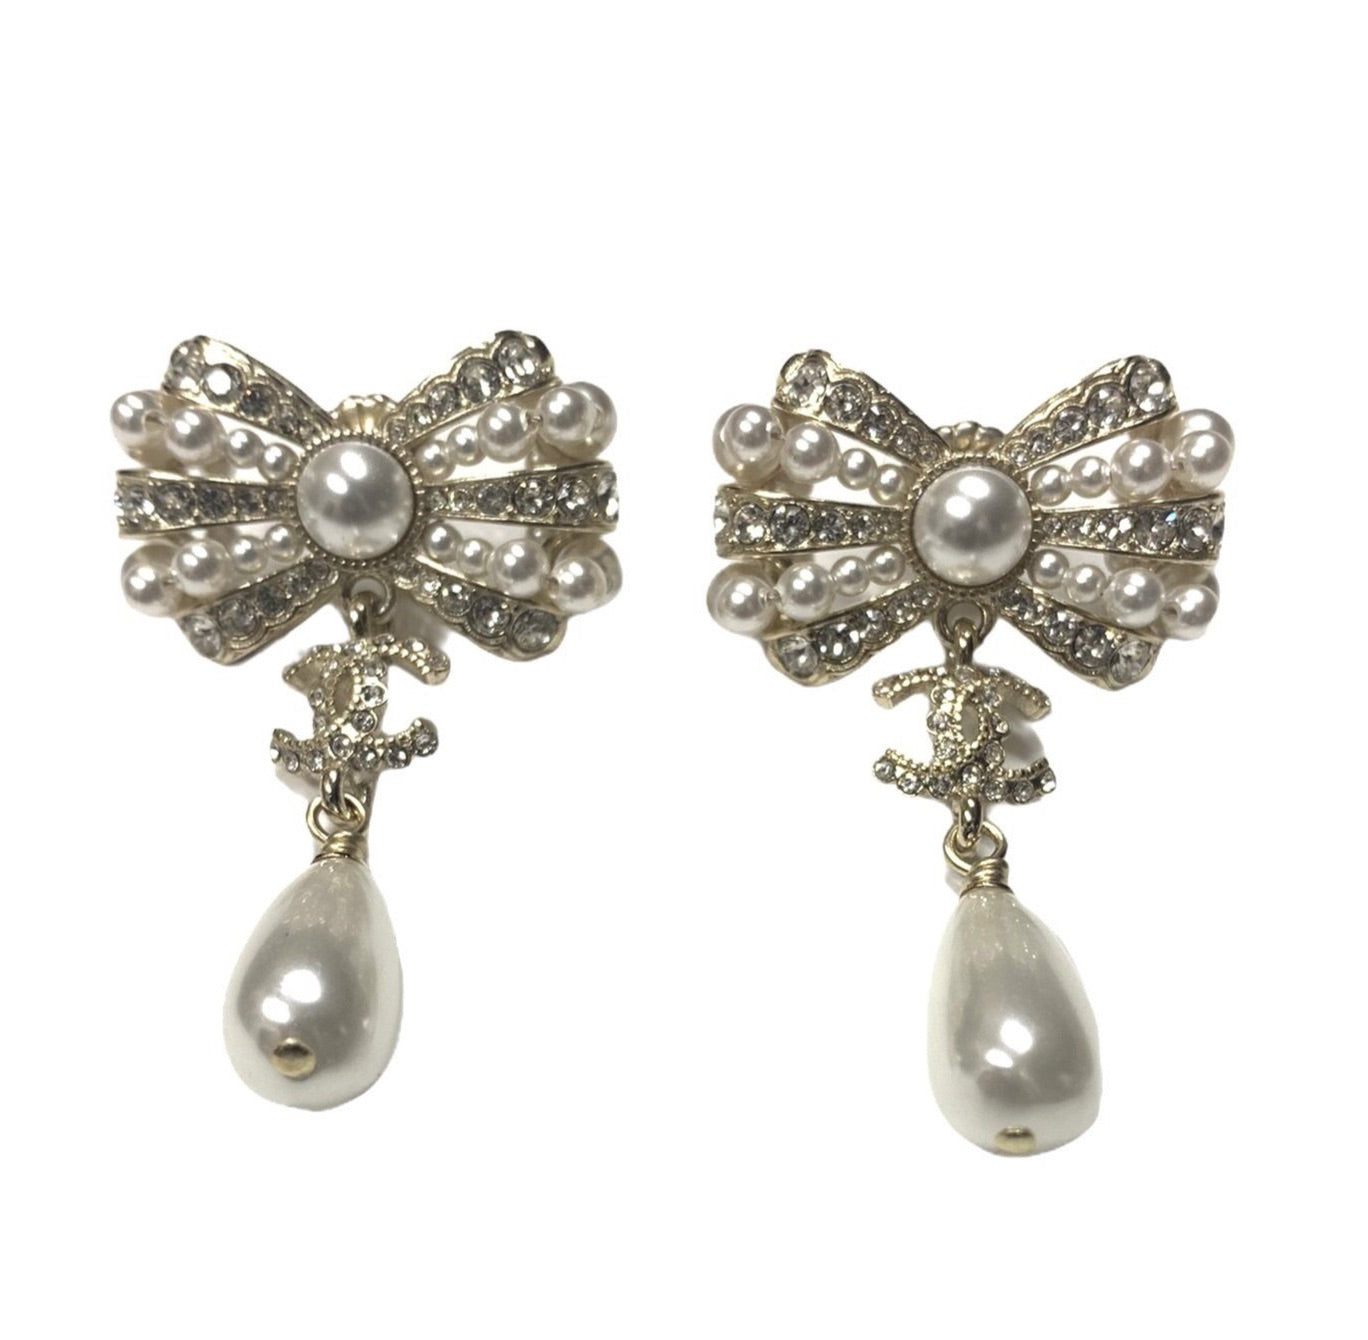 Best Deals for Chanel Pearl Drop Earrings